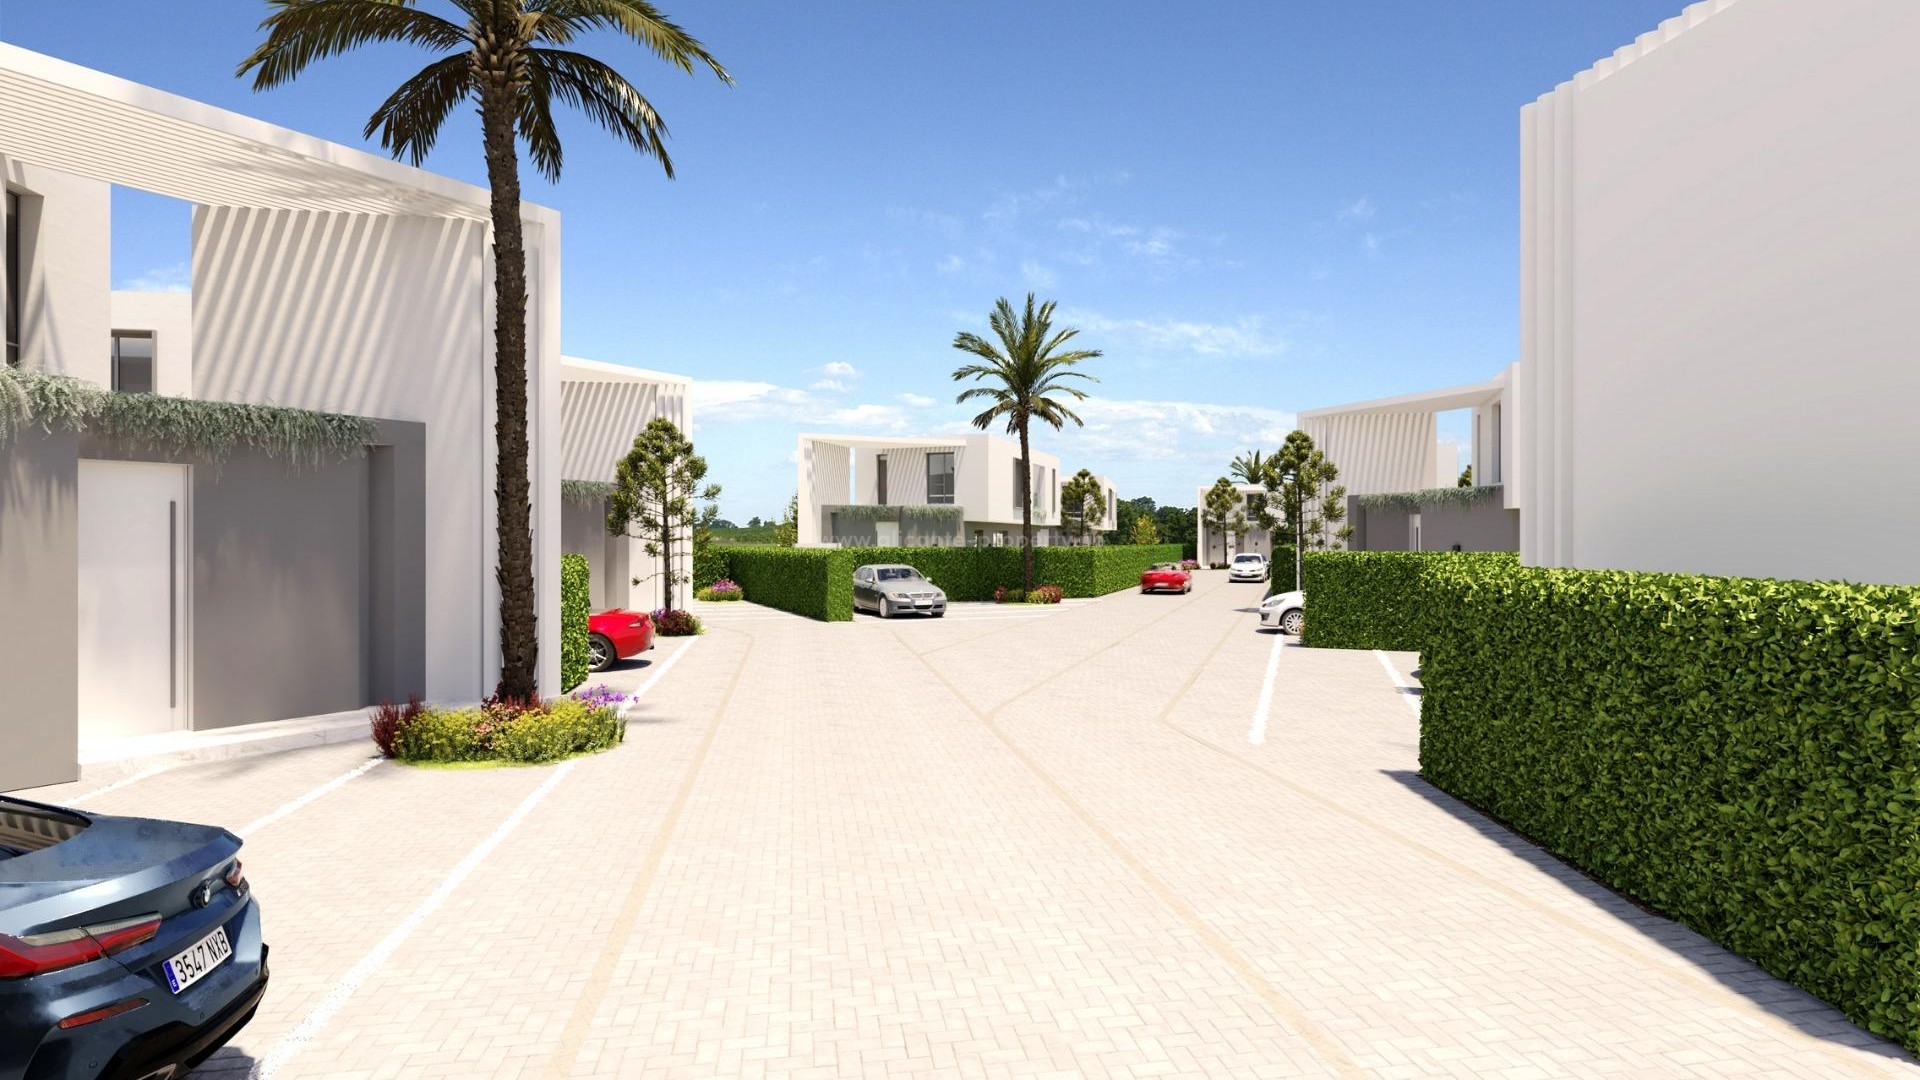 Eksklusive hus/villa i San Juan de Alicante, 4 soverom, 3 bad, privat basseng, stor uteplass, mulig for kjeller, 3 forskjellige modeller